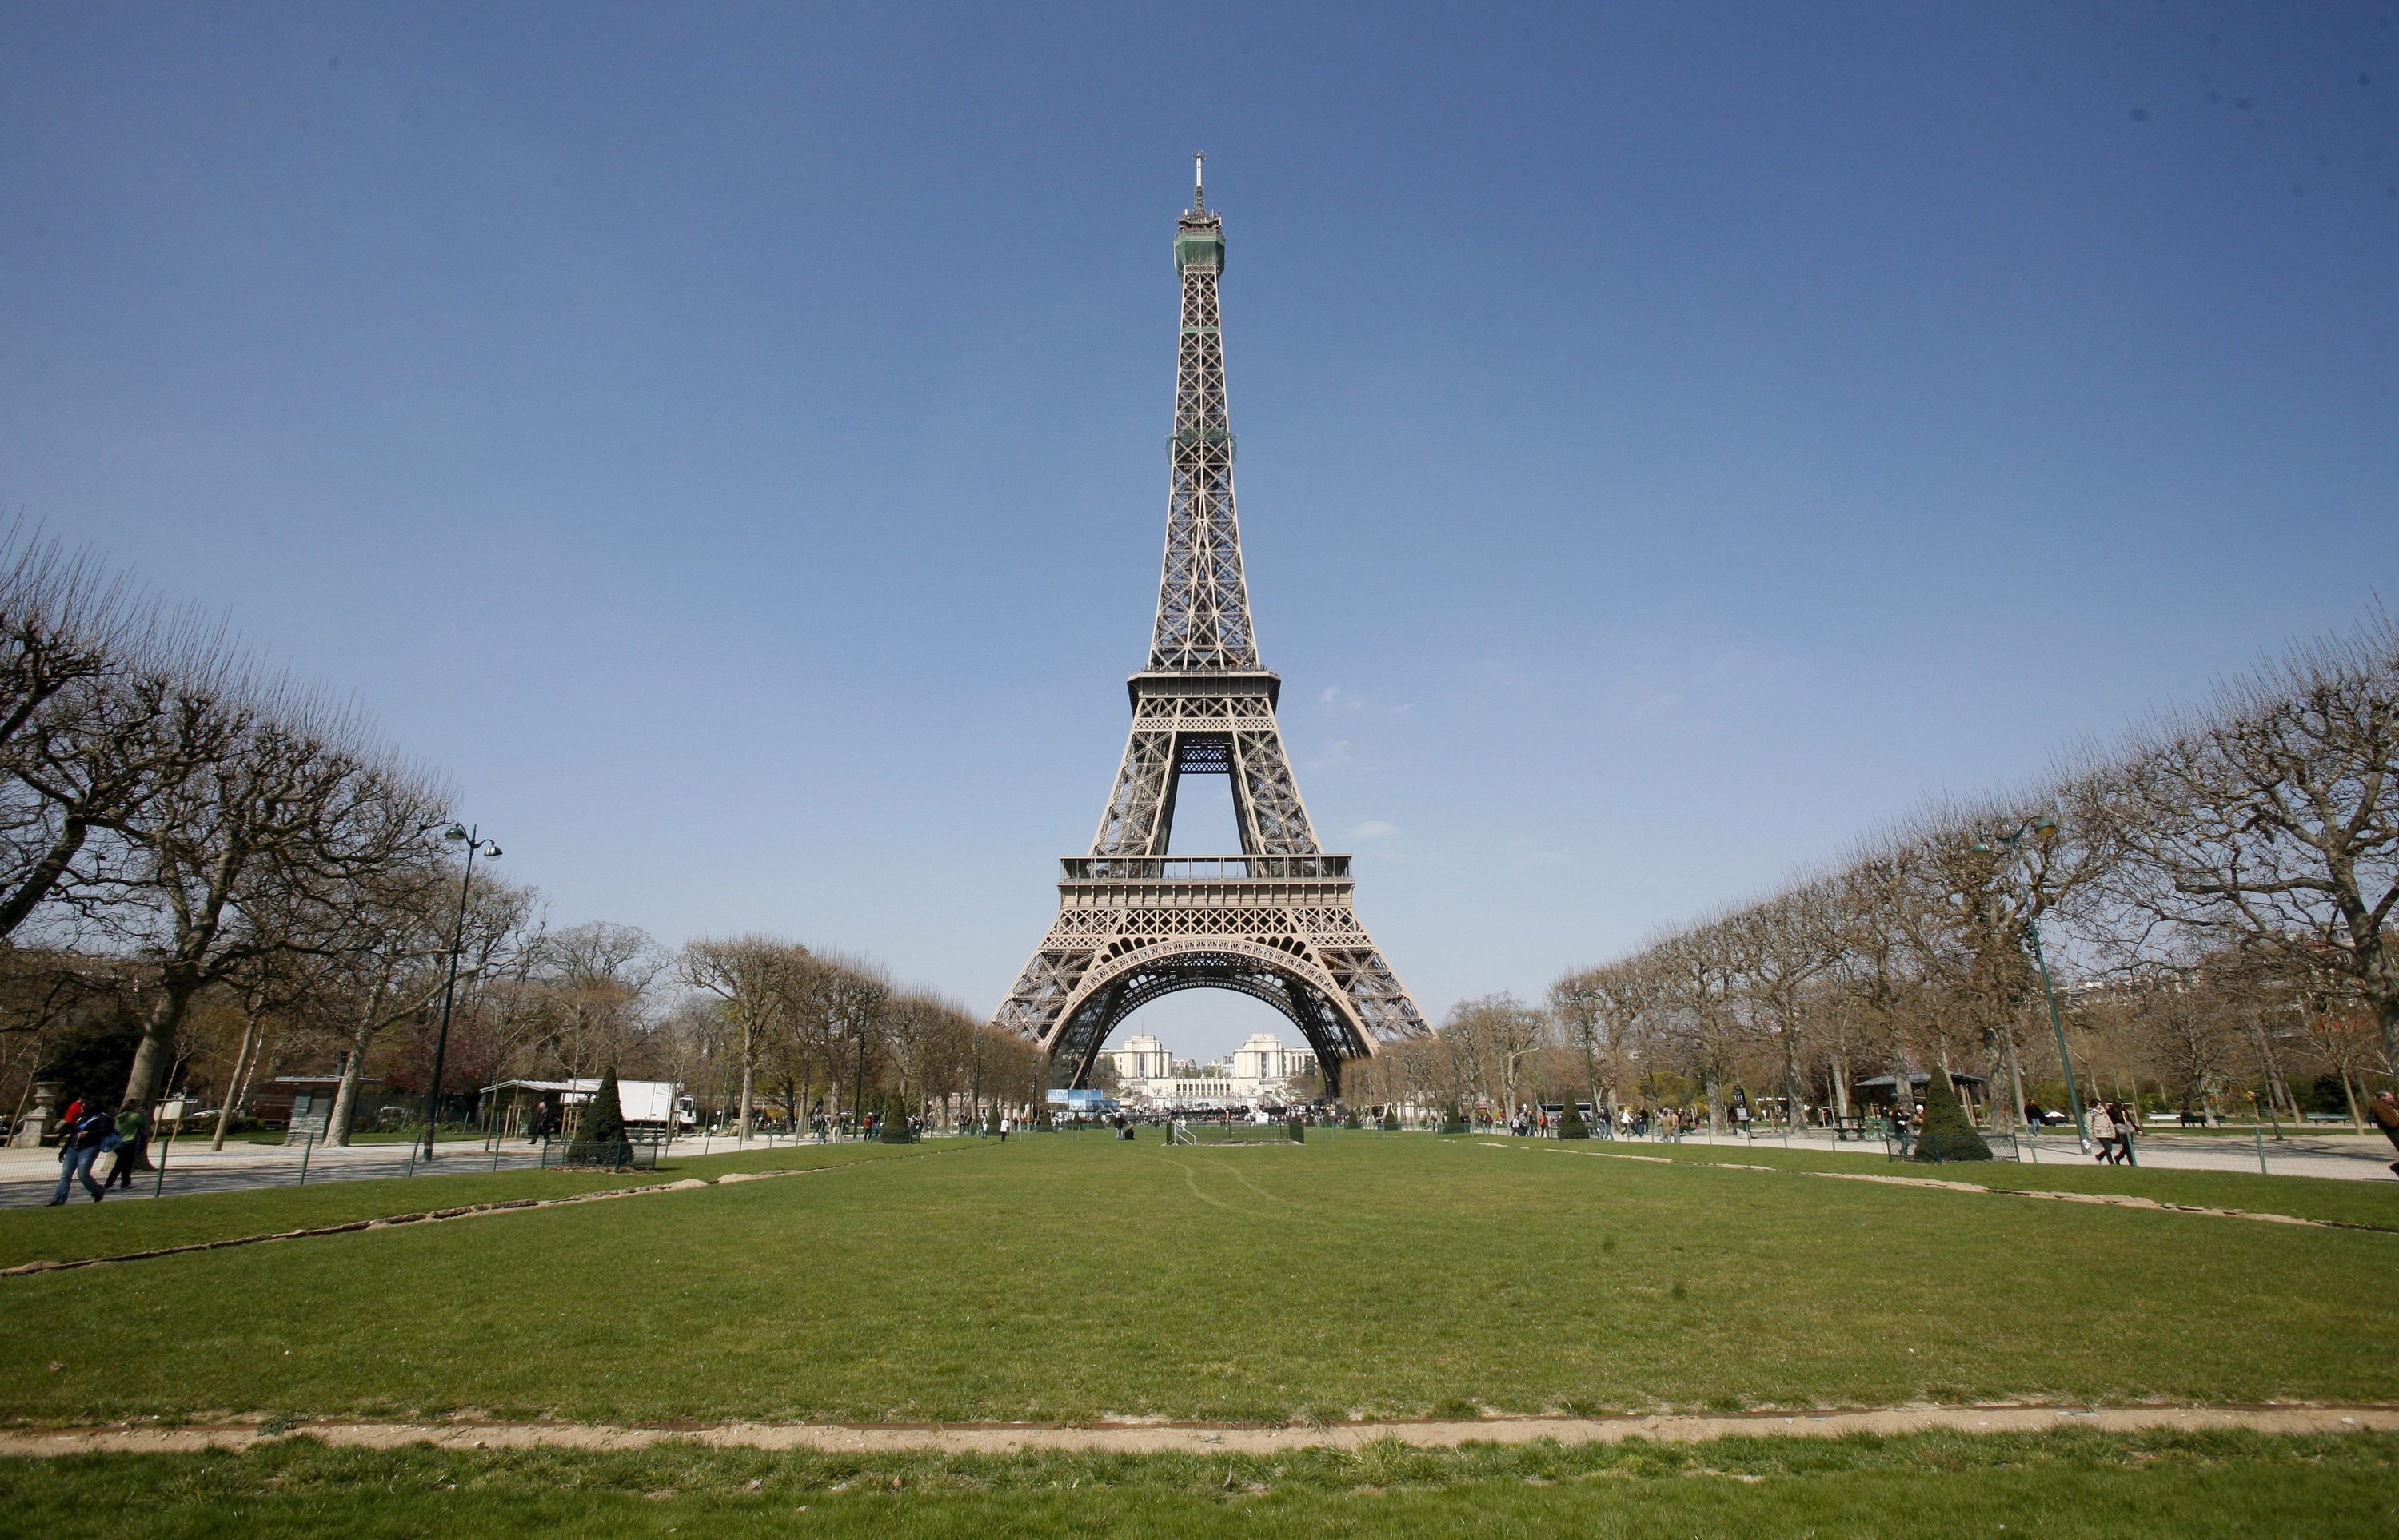 Auf der ersten Etage des Eiffelturms, in 57,6 Meter Höhe, befinden sich Restaurants, Souvenirläden und eine Aussichtsplattform für 3000 Besucher. Den benötigten Strom liefern zukünftig die Windturbinen. 